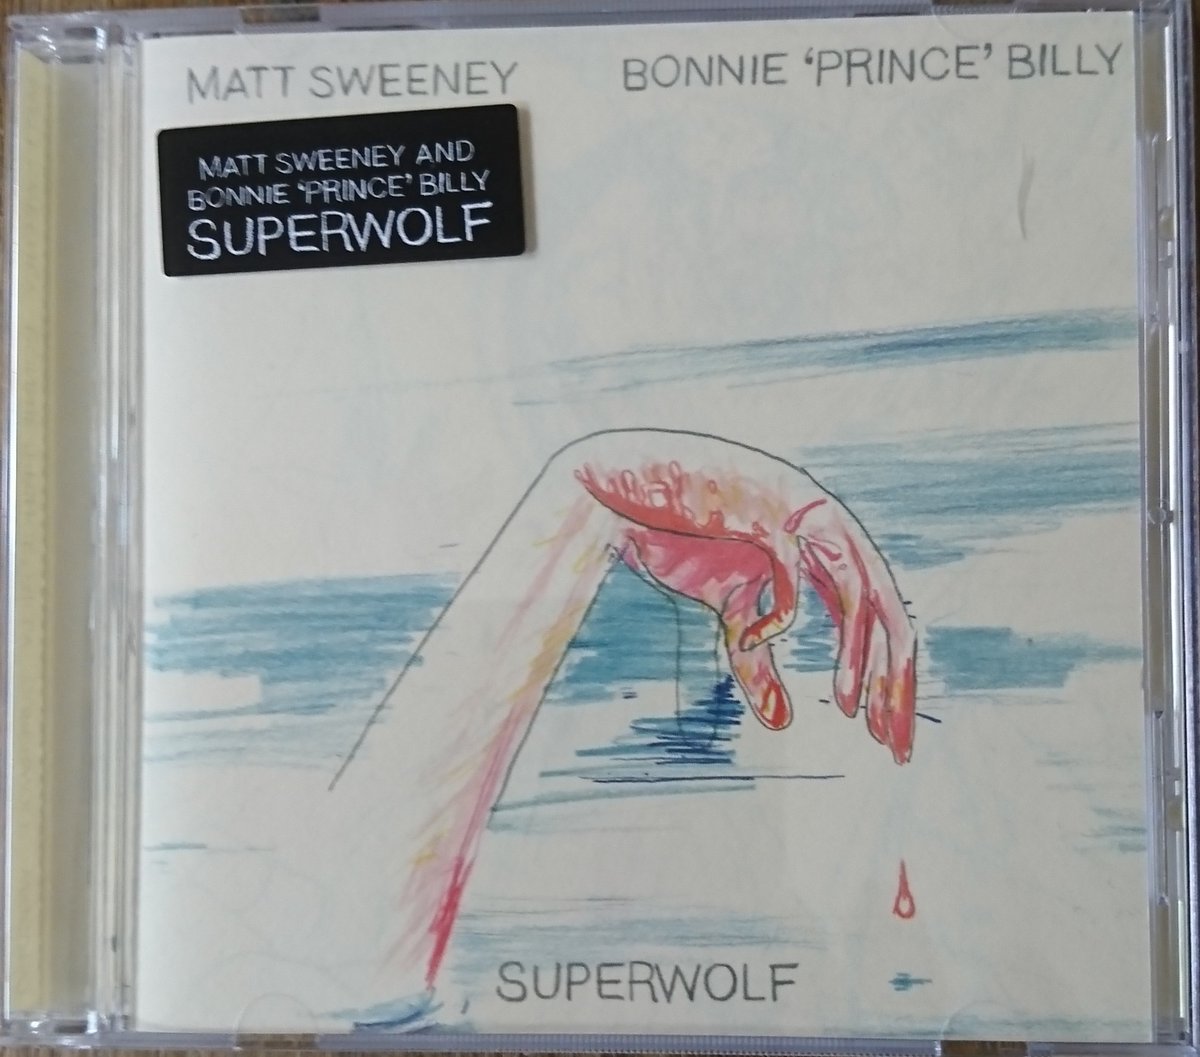 Voor de fijnproever, in @nachtplaten #MattSweeney en #BonniePrinceBilly met het album #Superwolf🎸😎